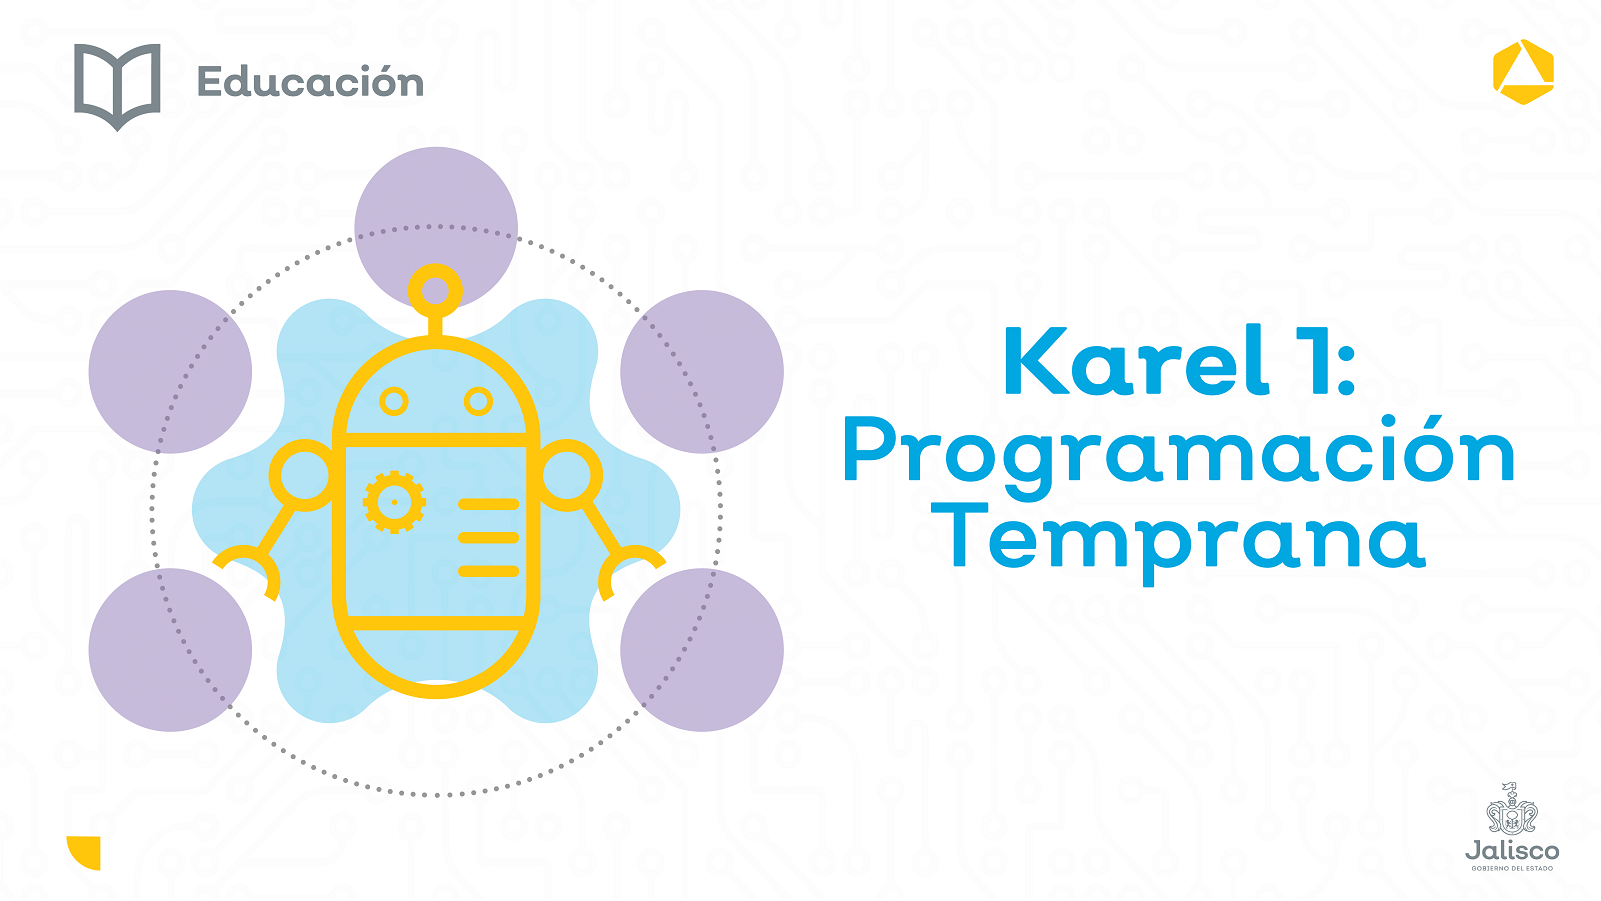 Karel 1: programación temprana